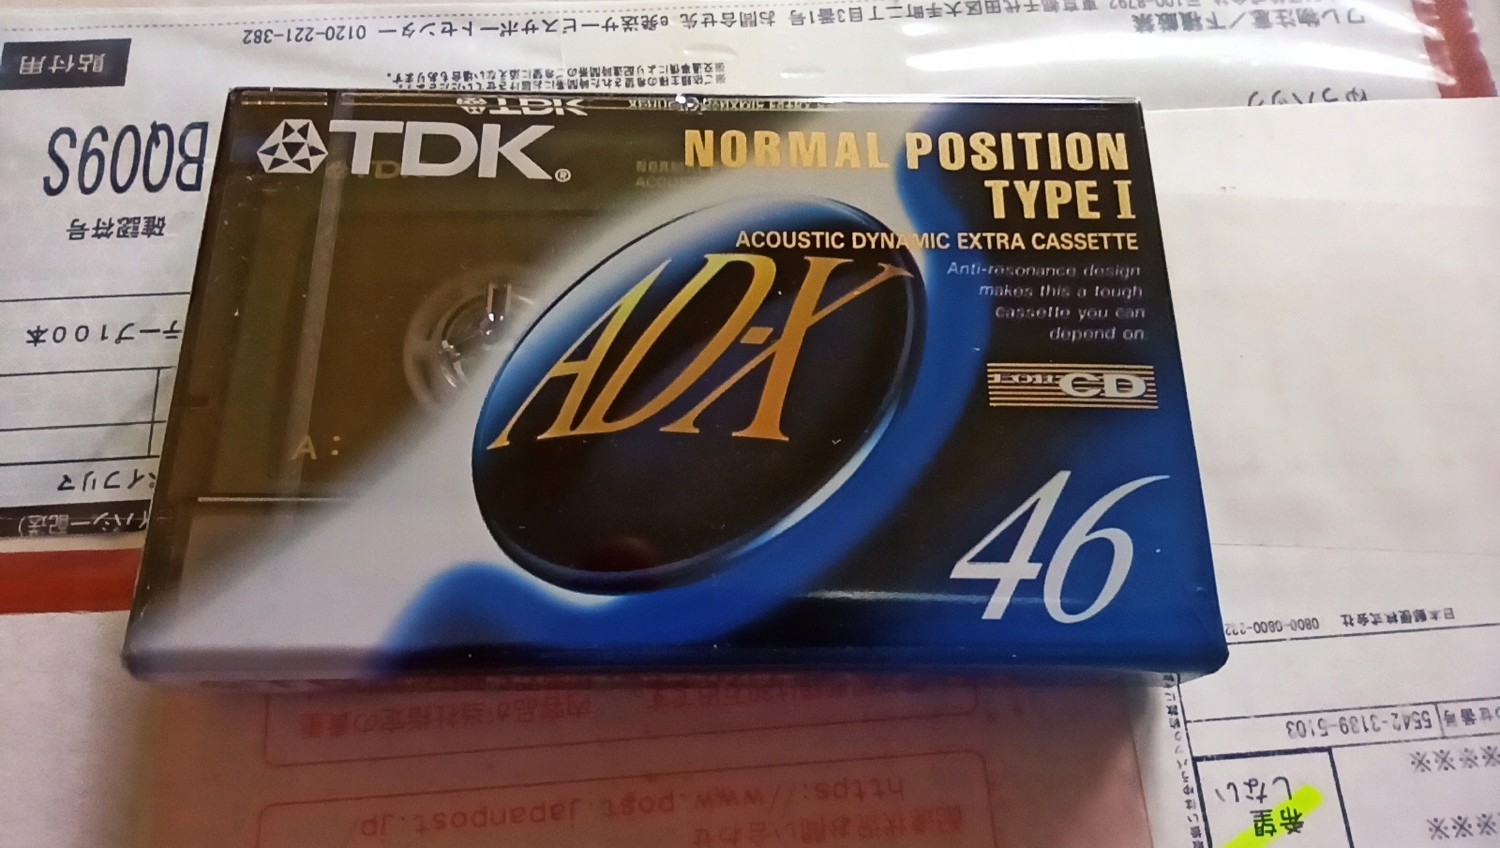 Tdk Ad-x 46 1992. Nová Japonská edice 1 ks